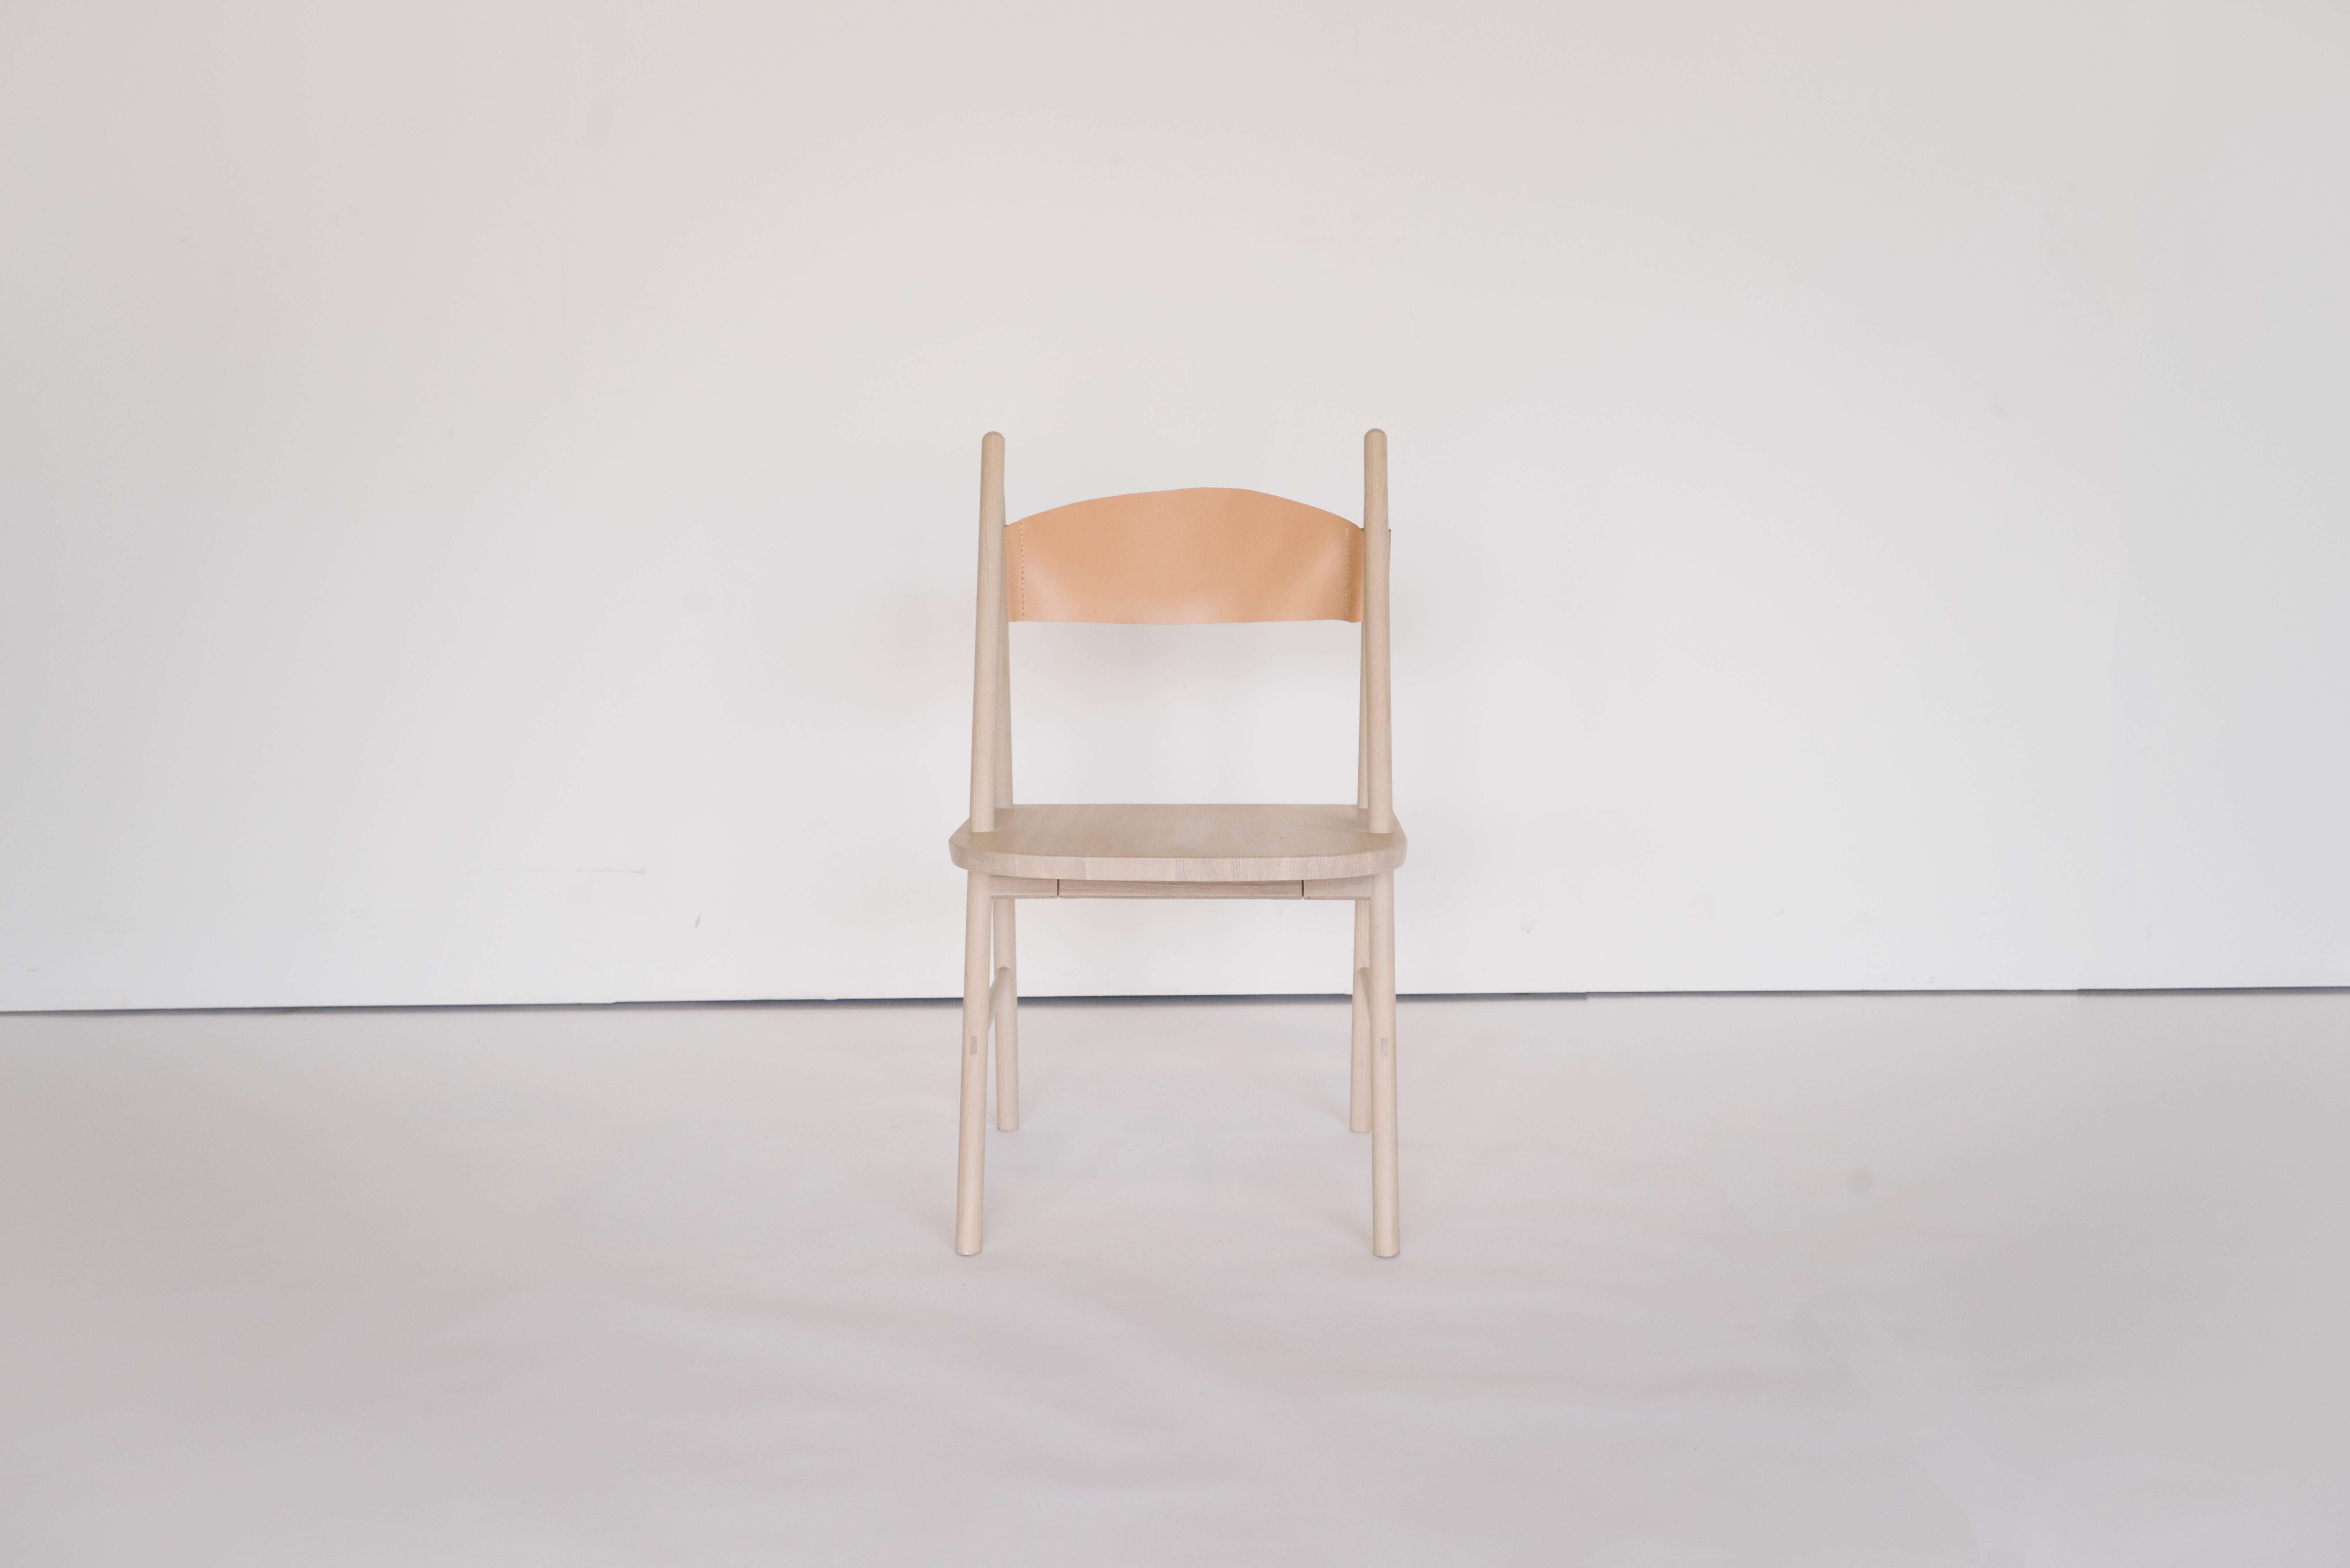 Sun at Six est un studio de design de meubles contemporains qui travaille avec des maîtres menuisiers chinois traditionnels pour fabriquer nos pièces à la main en utilisant la menuiserie traditionnelle. Le dossier concave en cuir fait de cette